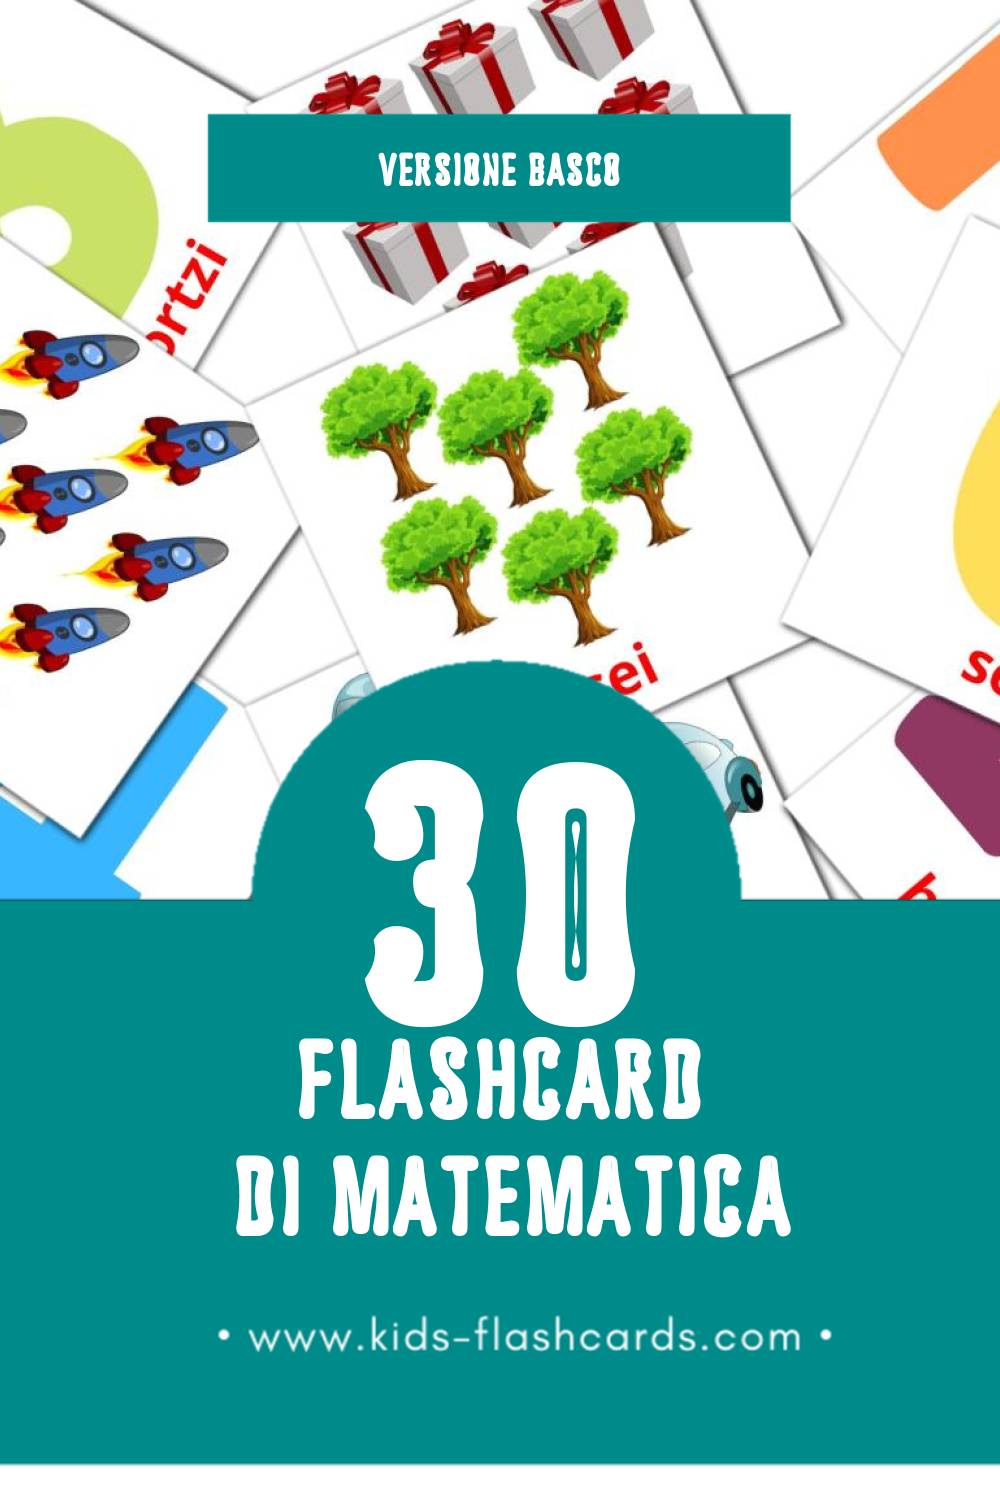 Schede visive sugli Matematikak per bambini (30 schede in Basco)